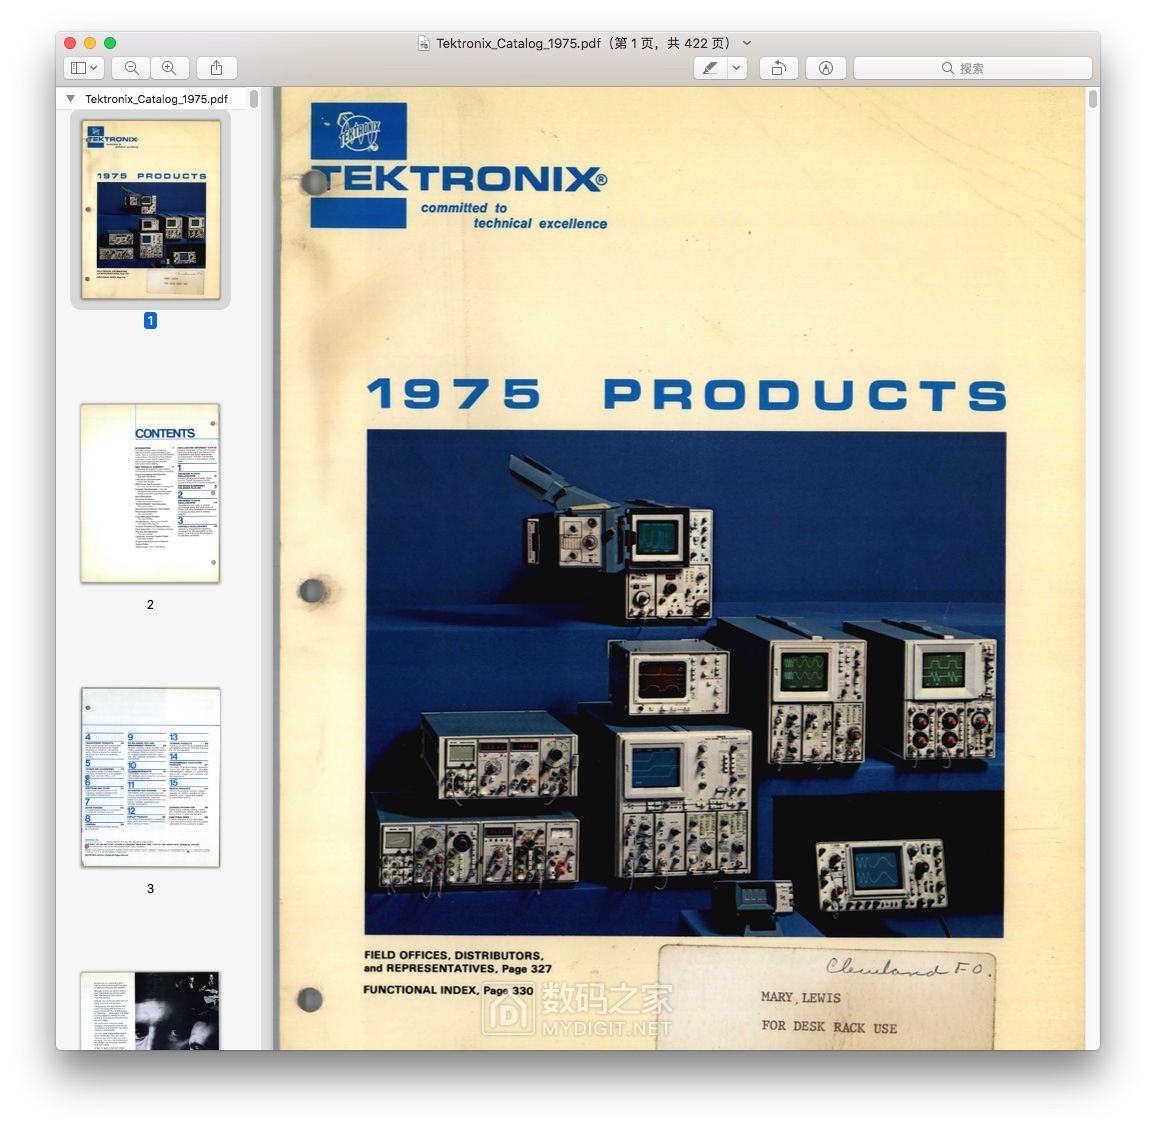 Tektronix_Catalog_1975.jpg